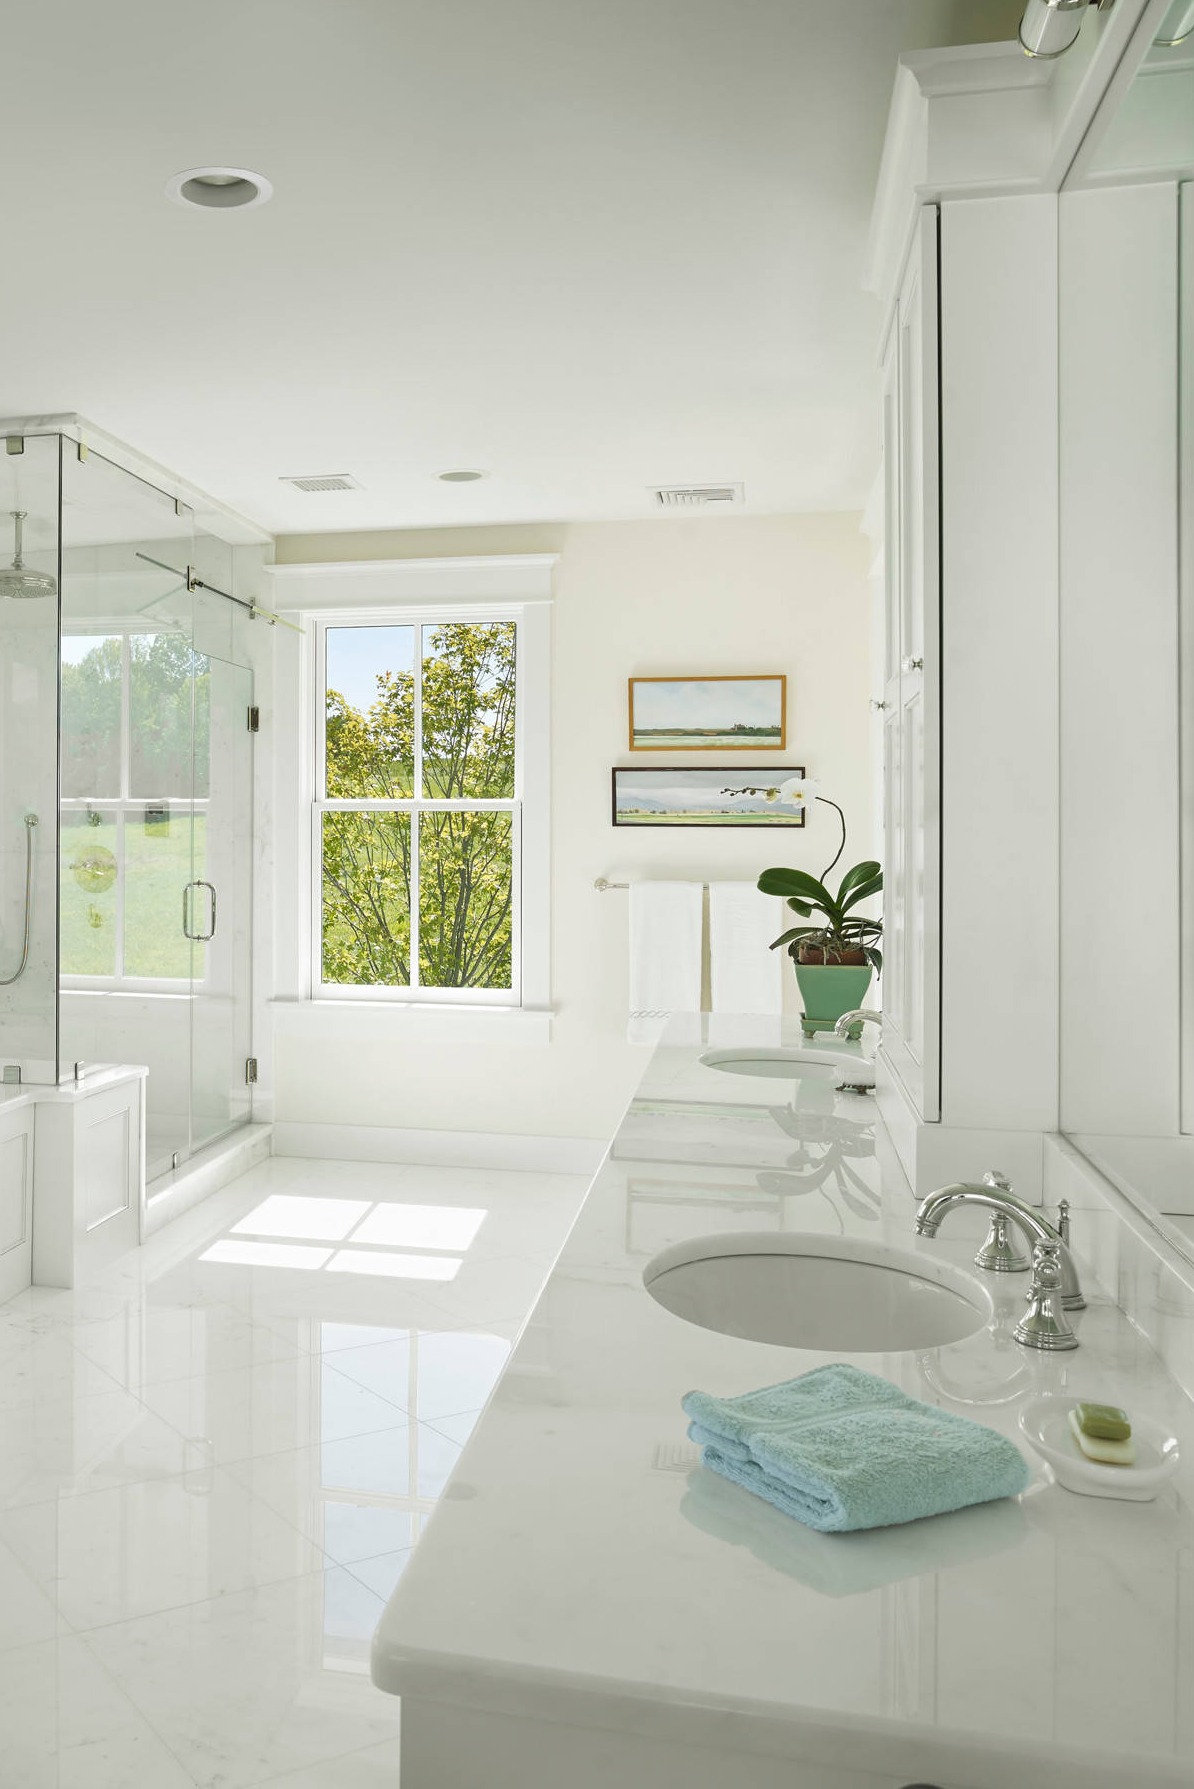 Glossy White Marble Countertops Vanity Cabinets Frameless Glass Shower Door Floor Tiles